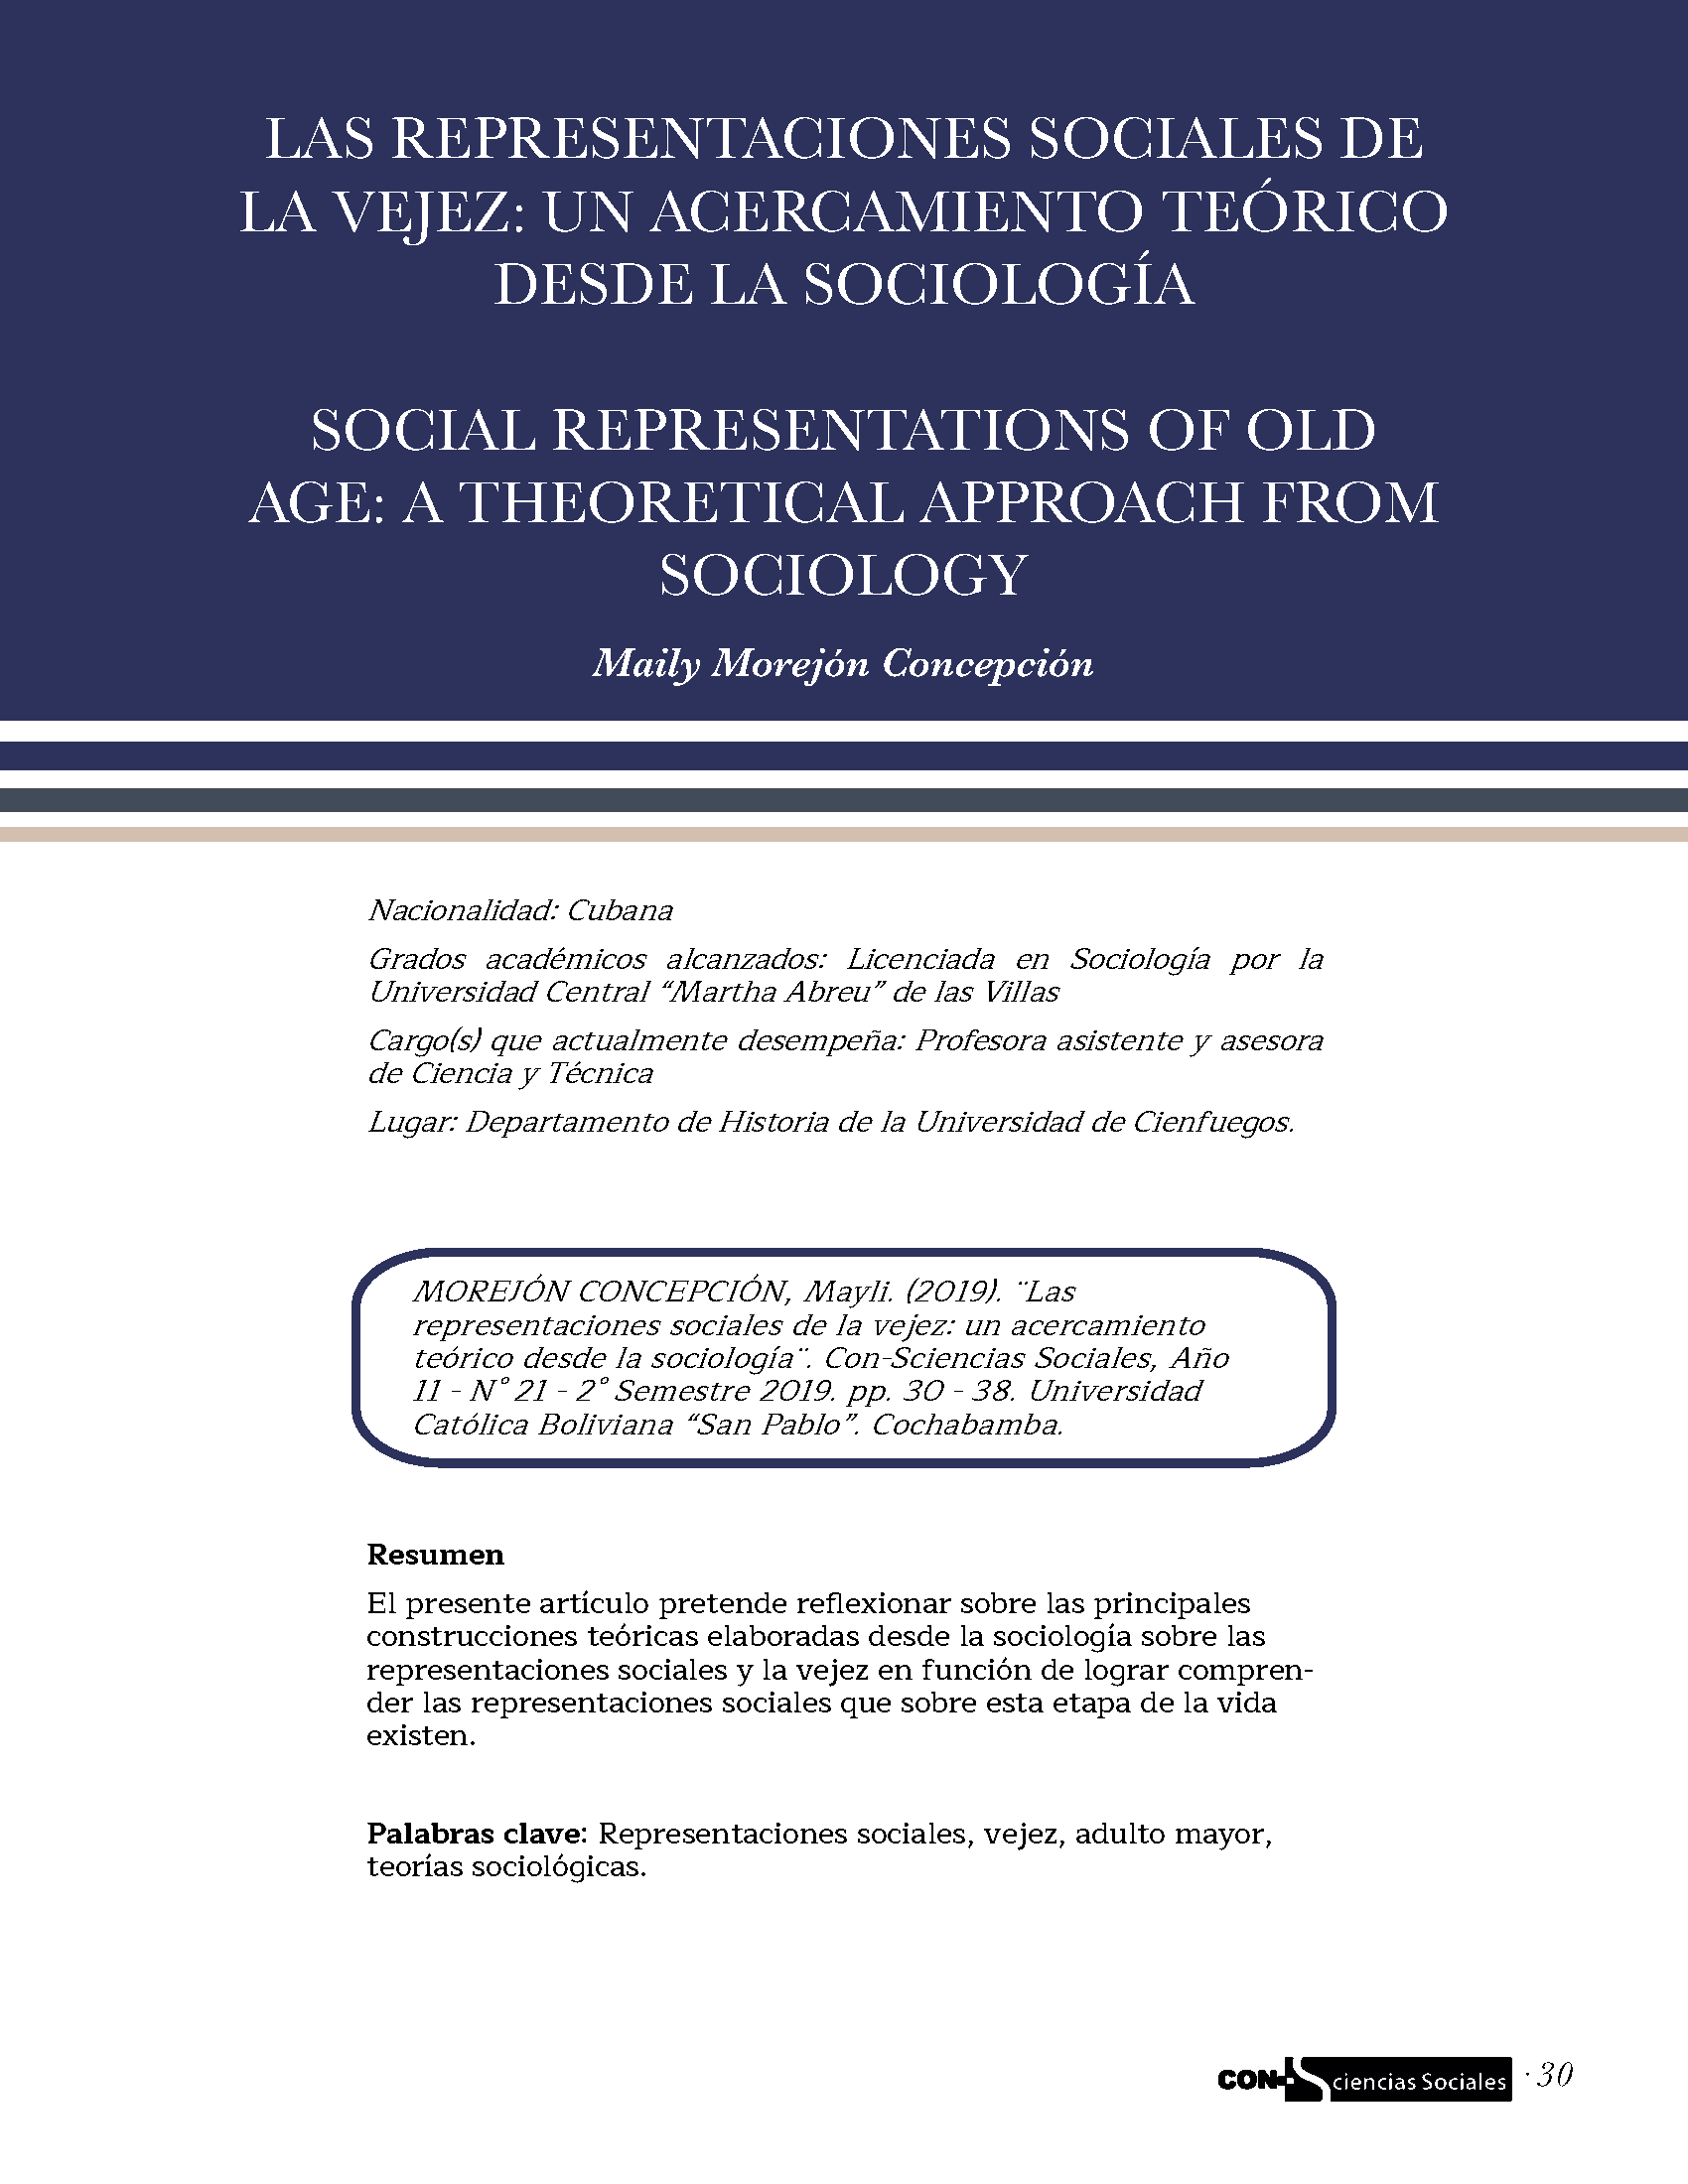 Las representaciones sociales de la vejez: un acercamiento teórico desde la sociología